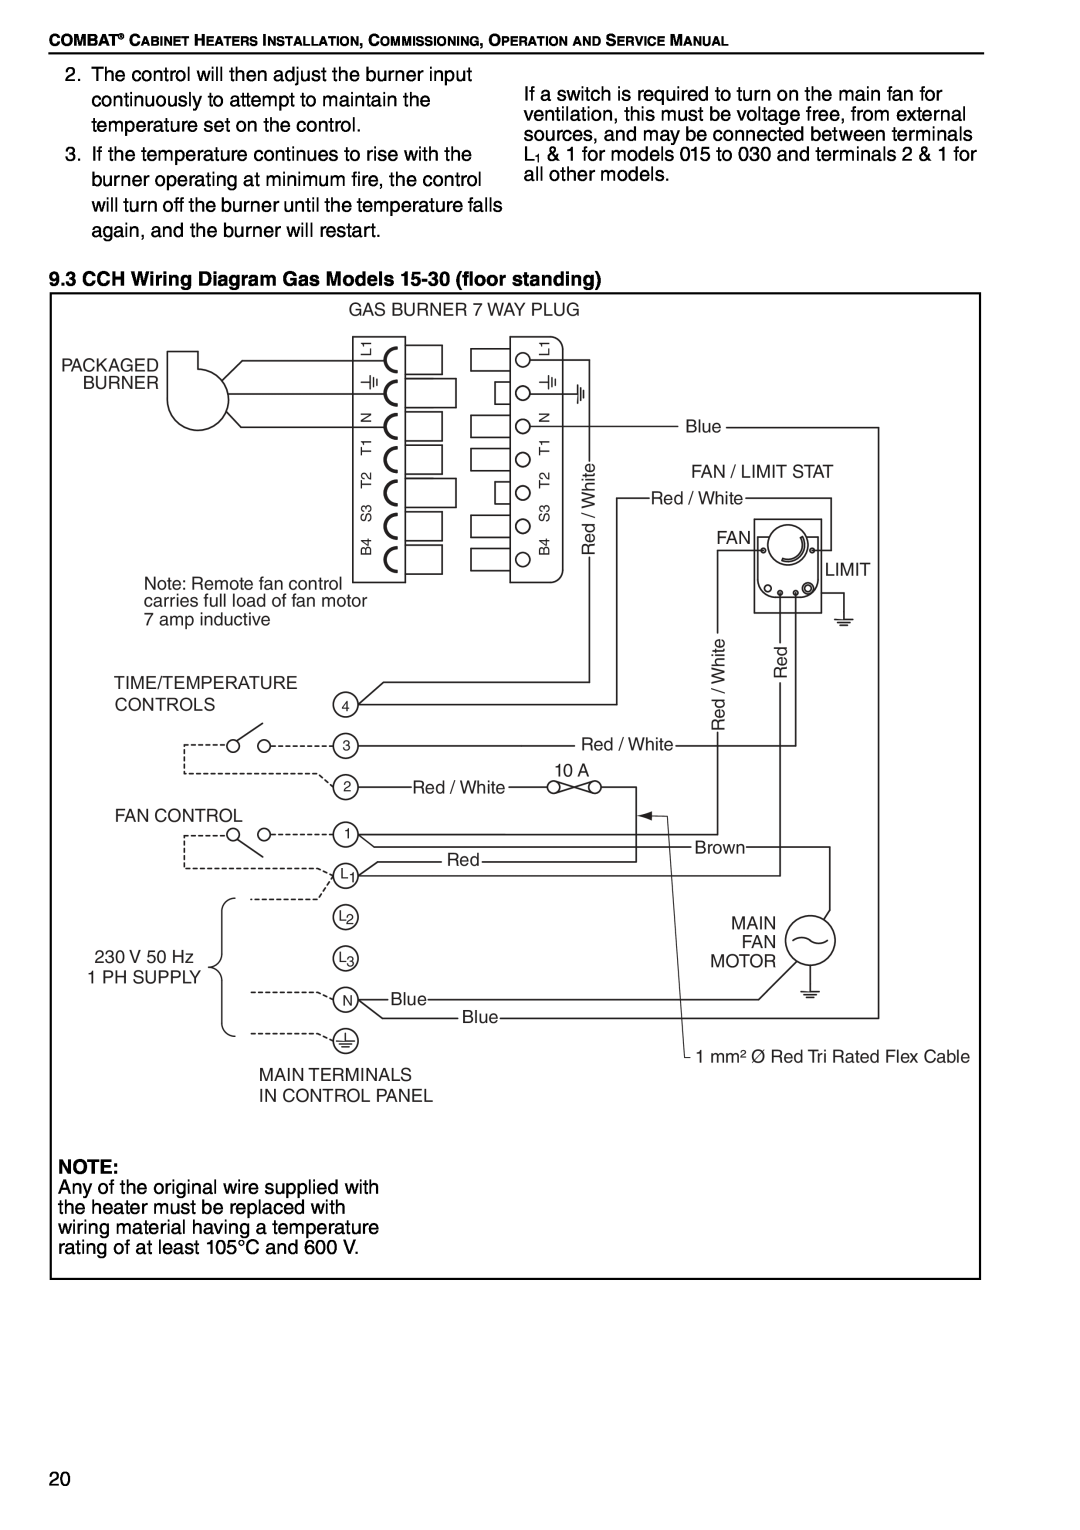 Roberts Gorden POP-ECA/PGP-ECA 015 to 0100 service manual CCH Wiring Diagram Gas Models 15-30 floor standing 